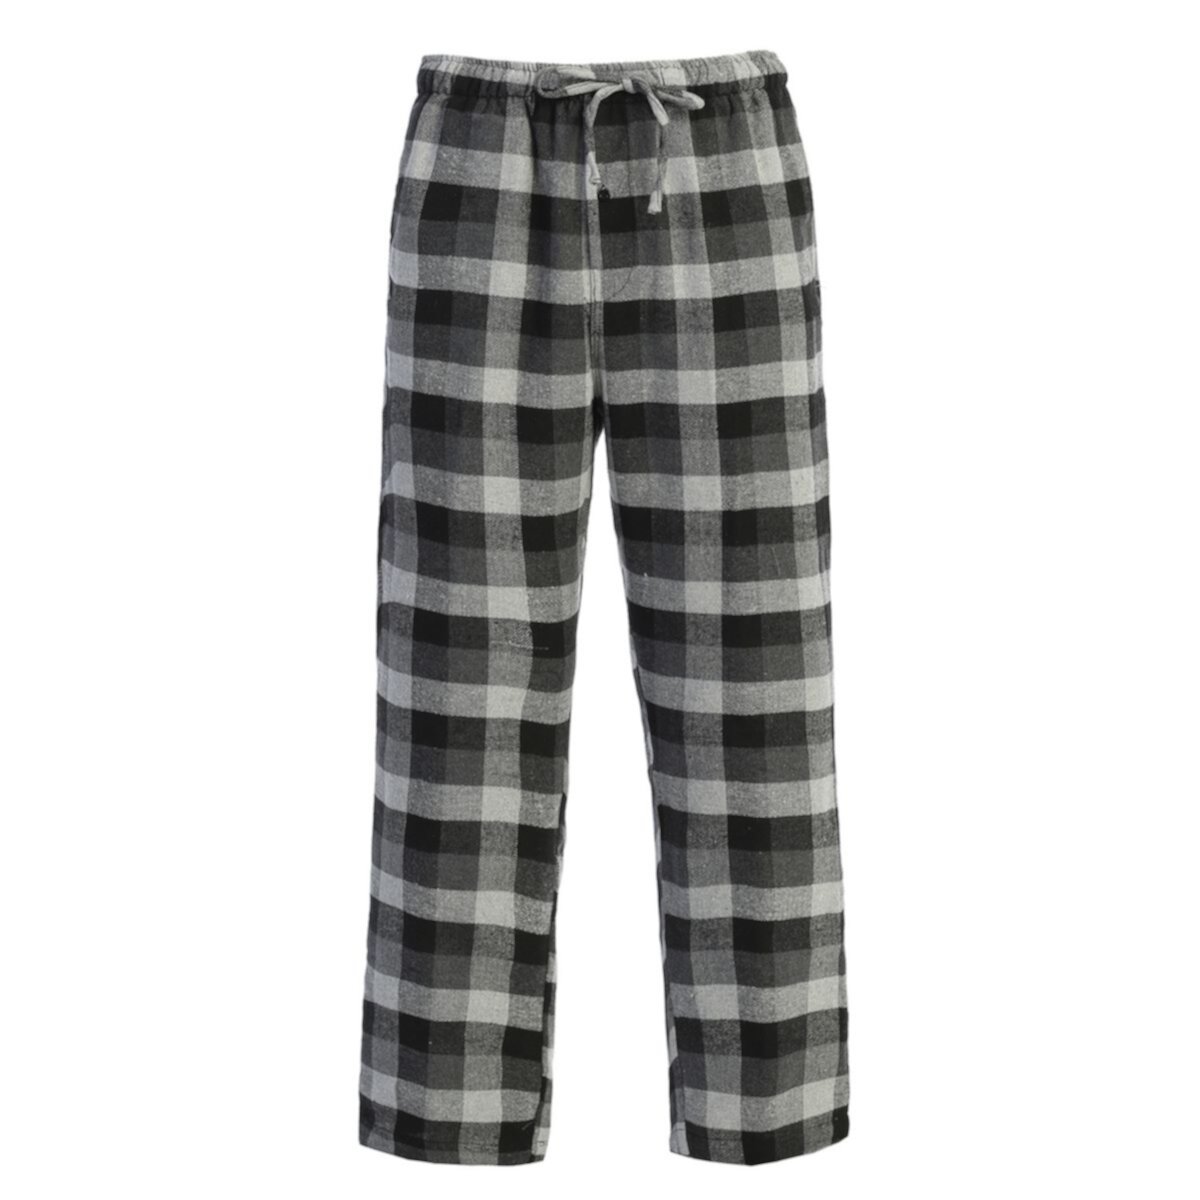 Мужские фланелевые пижамные брюки Gioberti с эластичной резинкой на талии Gioberti